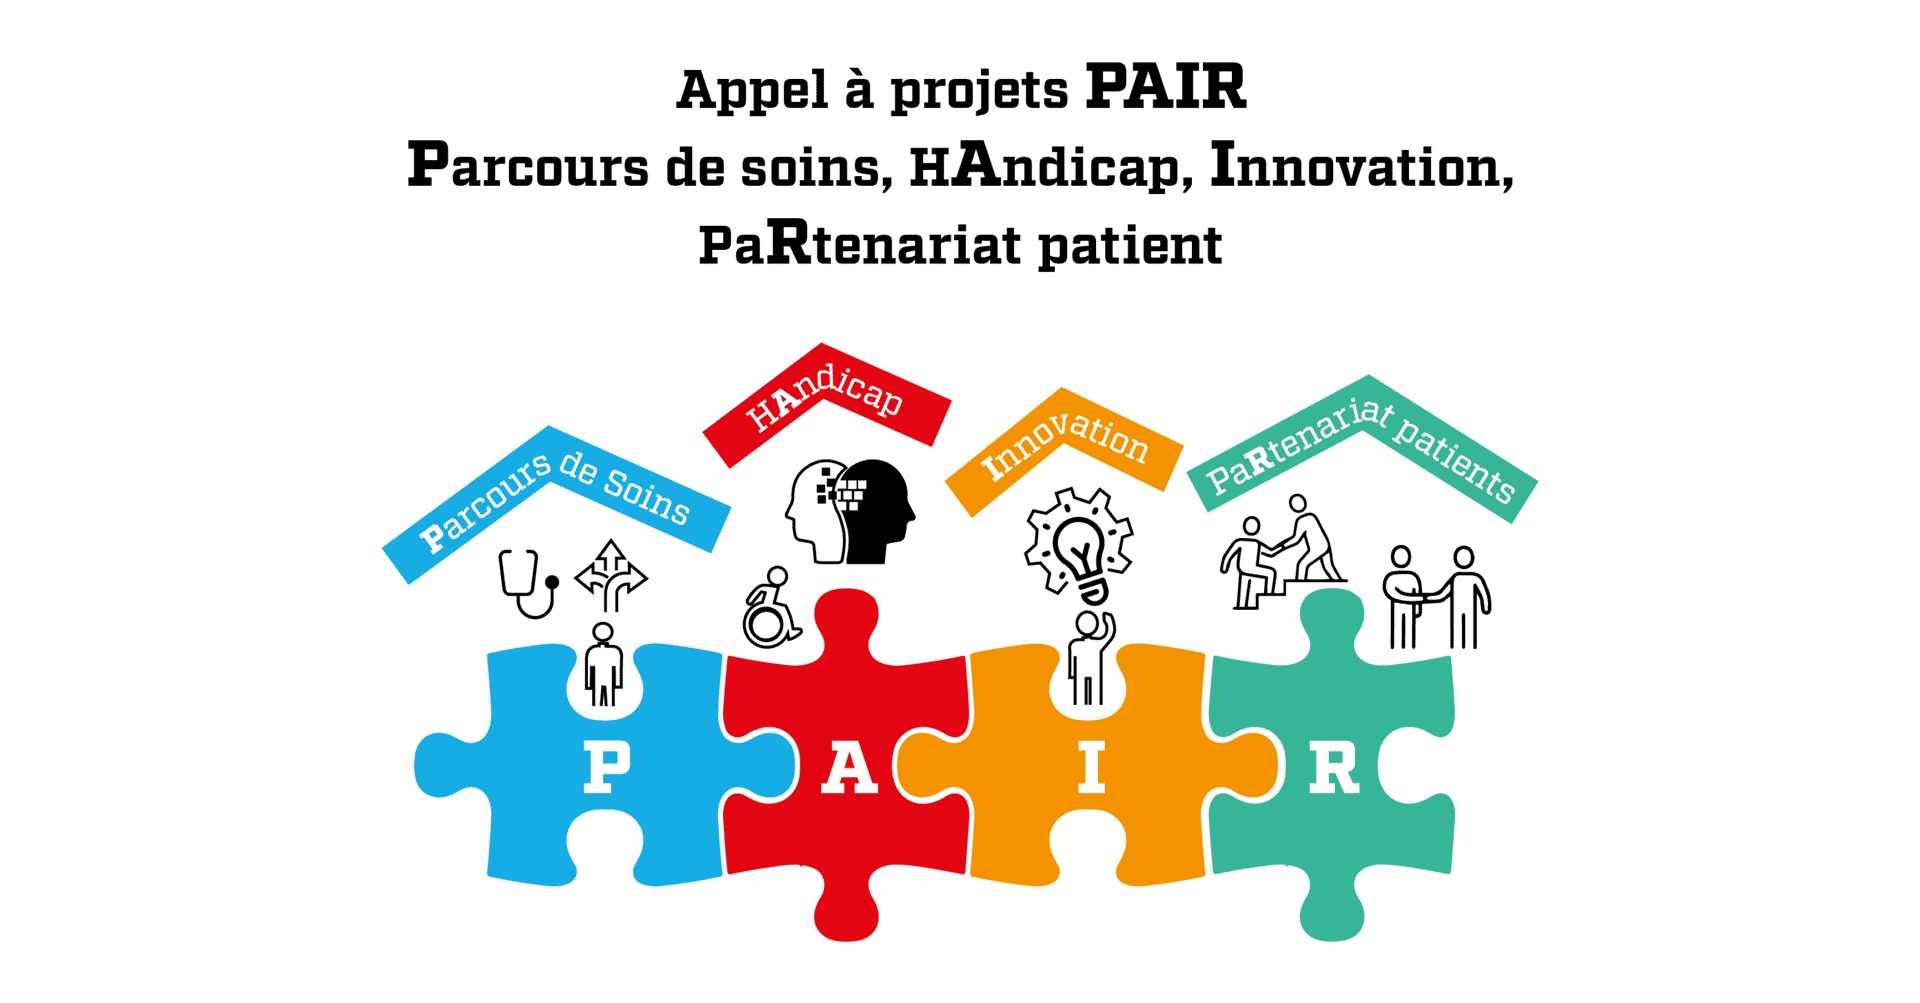 Appel à projets « Parcours de soins, handicap, innovation, partenariat patient » (PAIR) de la Métropole de Lyon et des Hospices Civils de Lyon